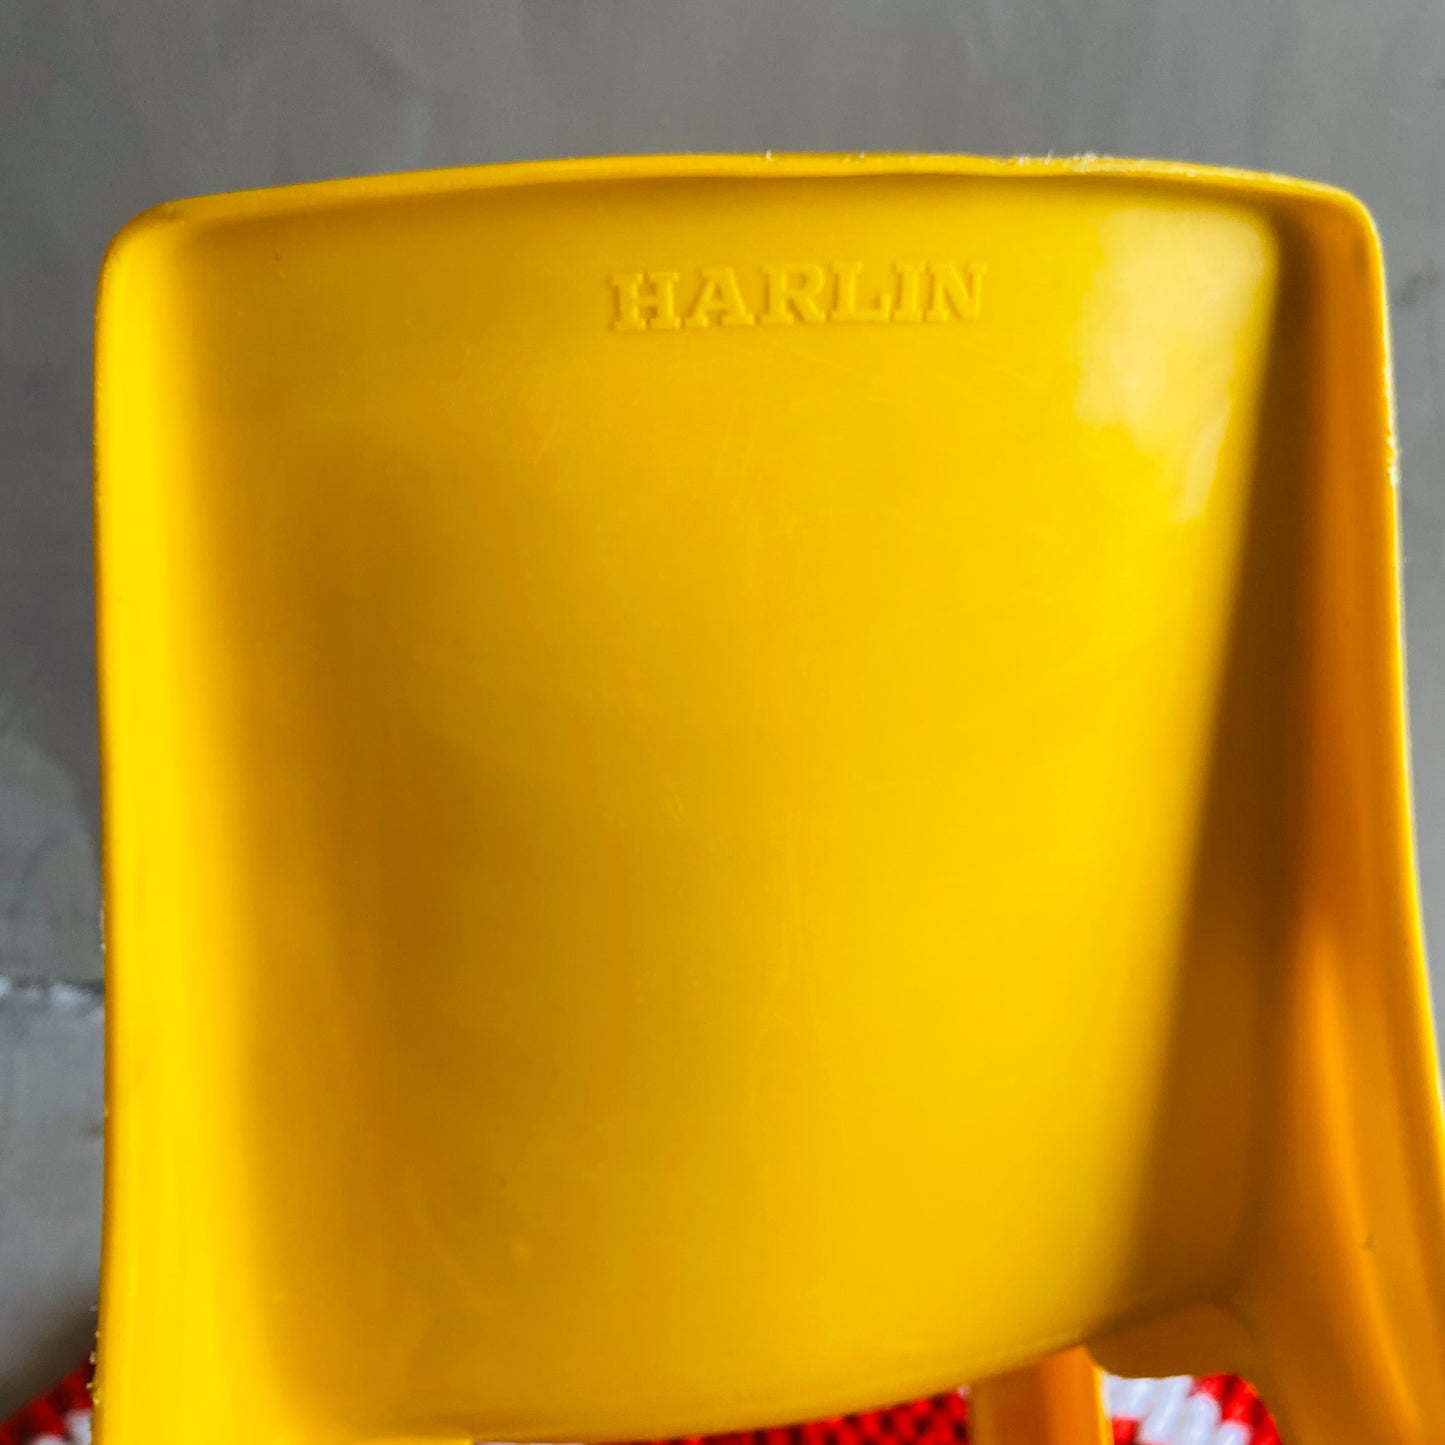 【USA vintage】HARLIN kids chair